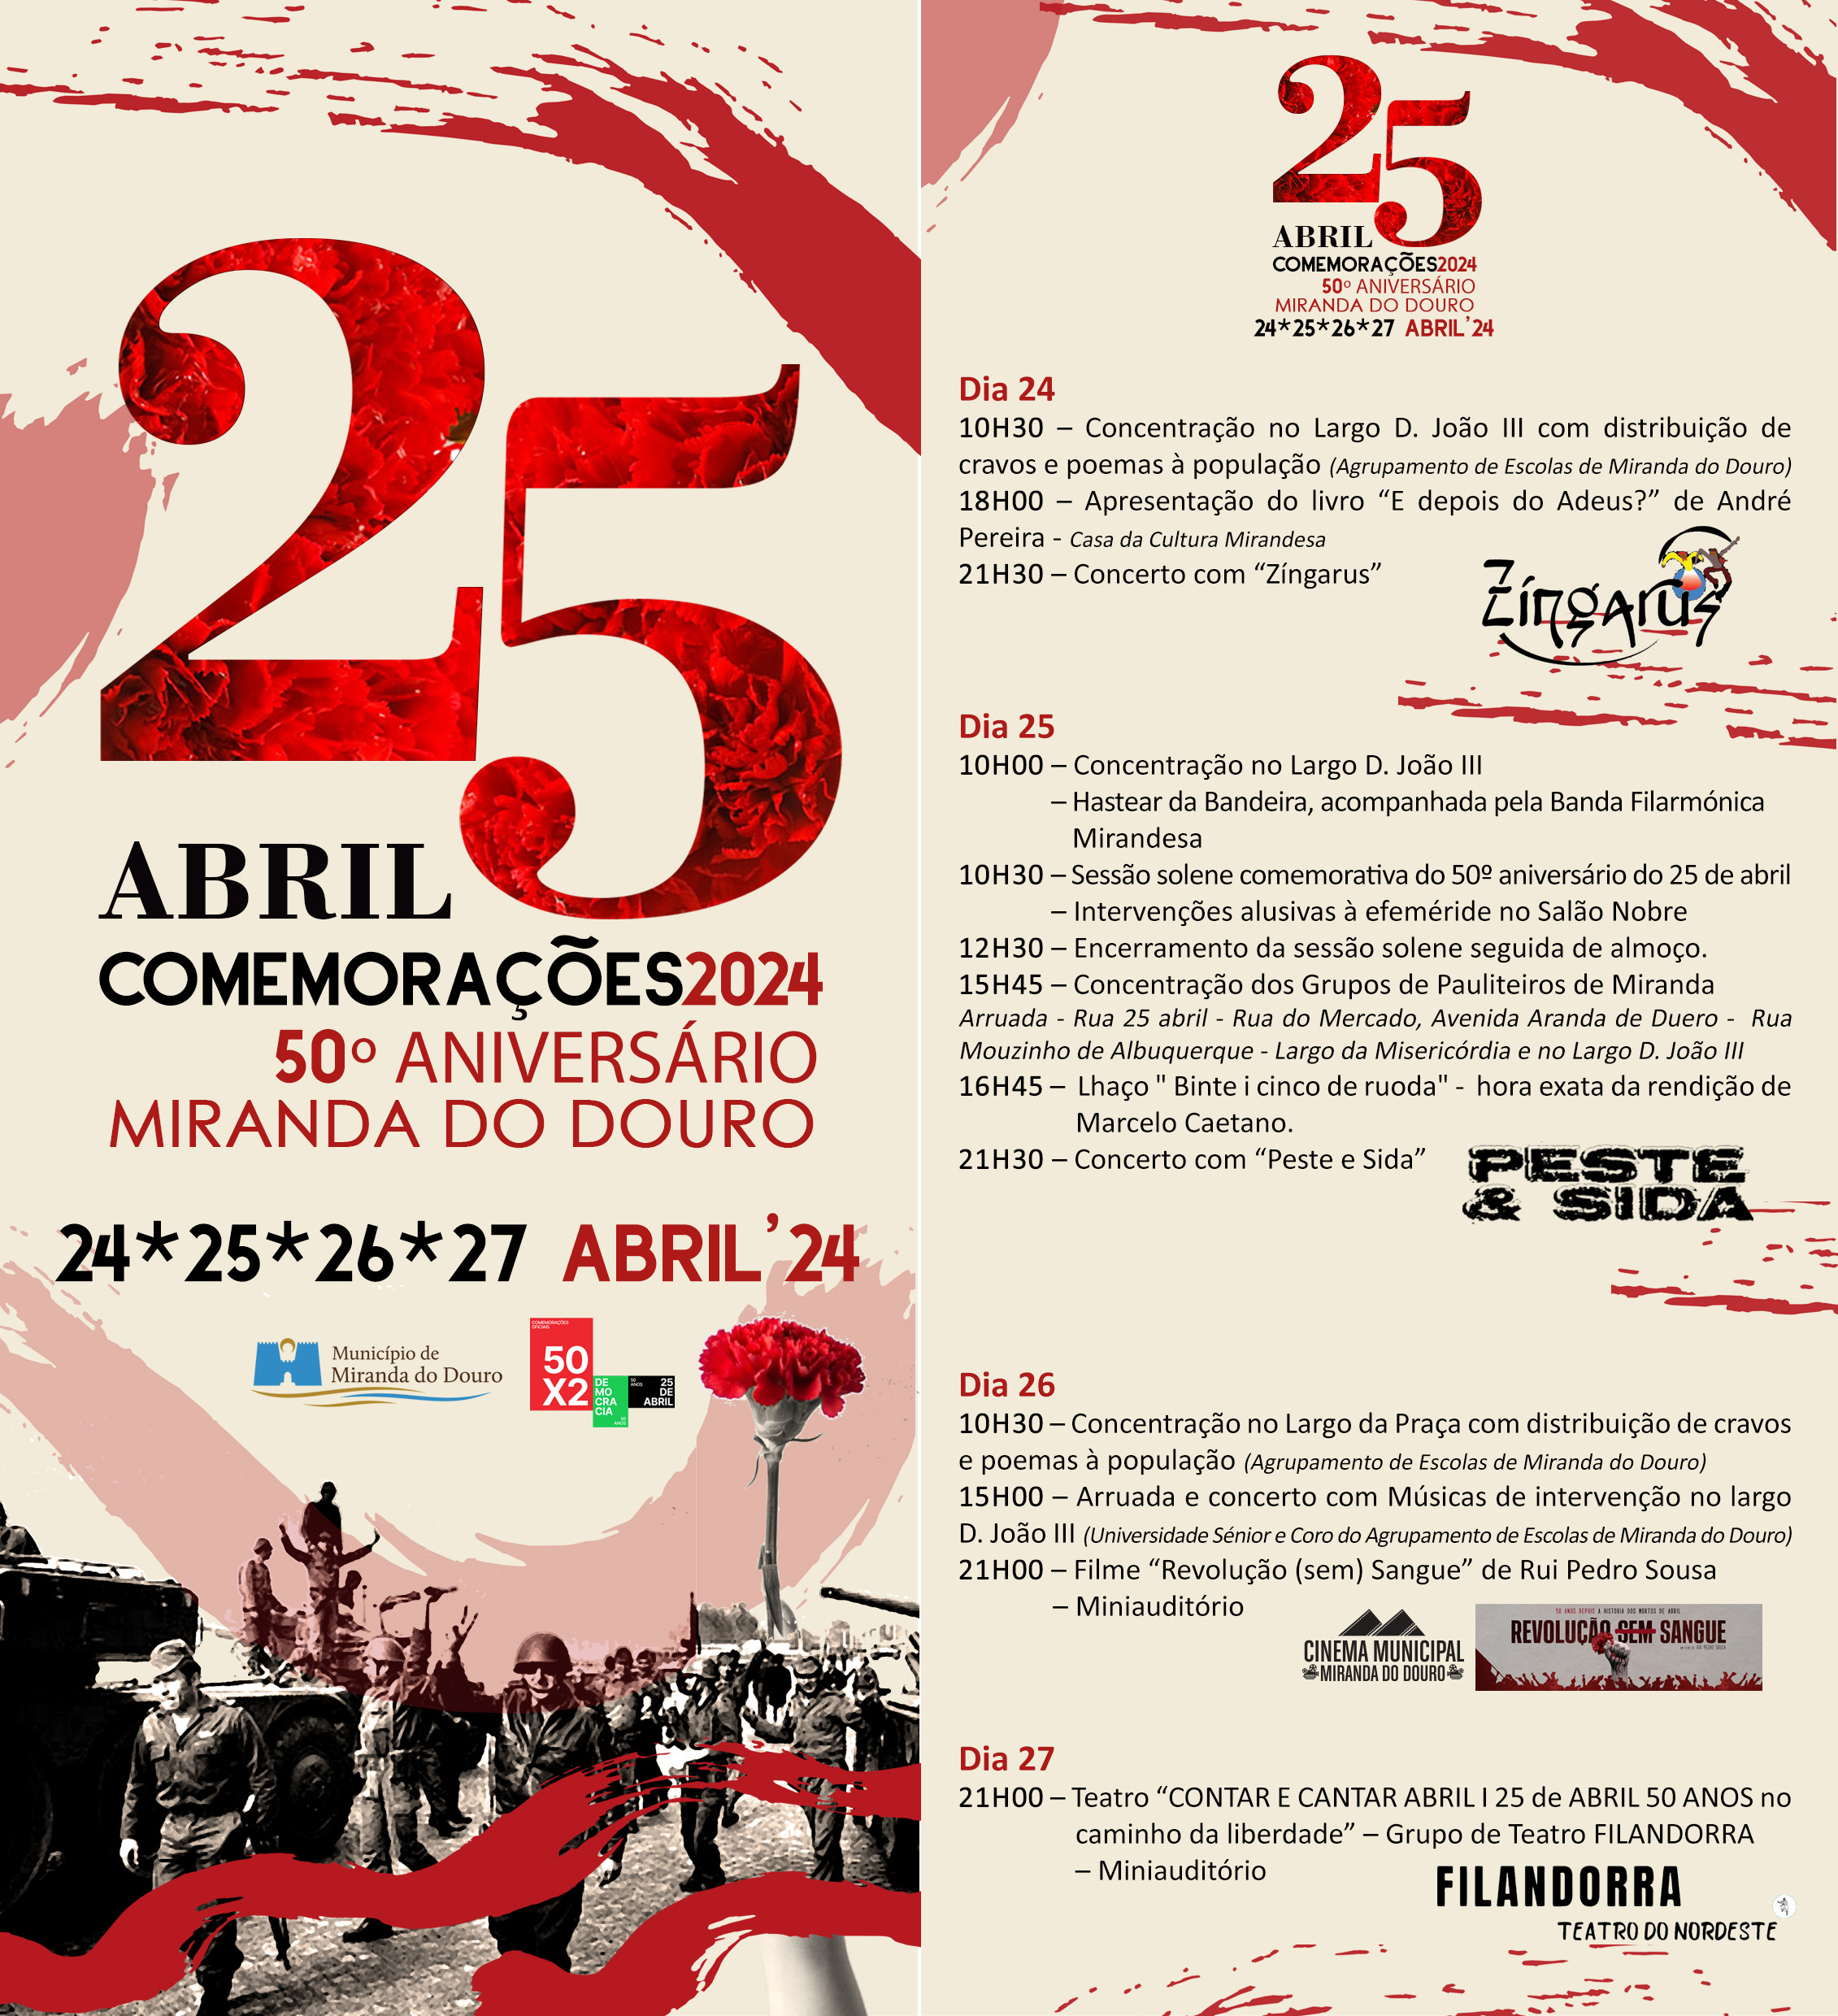 Capa Oficial do Evento Comemorações do 50º Aniversário do 25 de abril